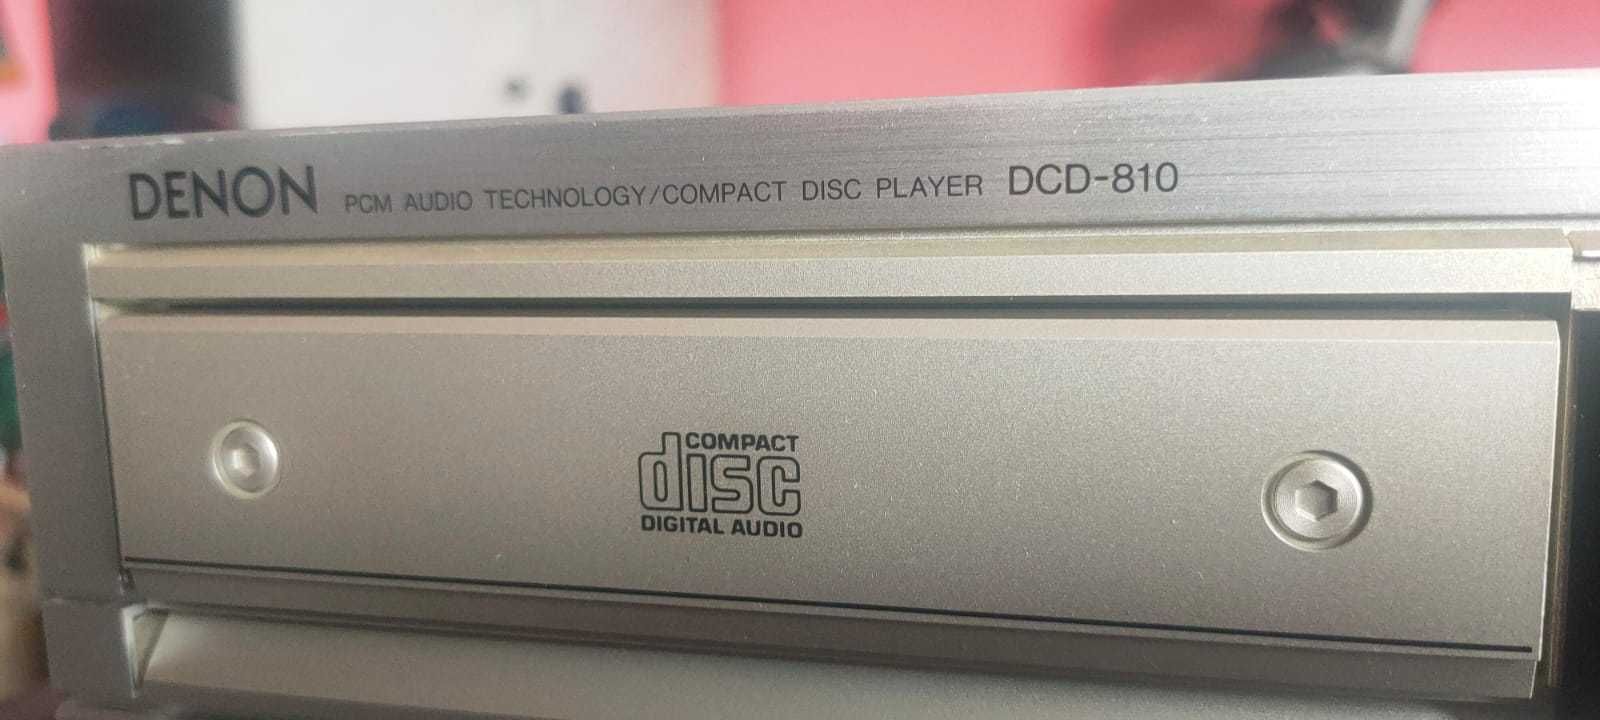 Denon DCD-810 cd player